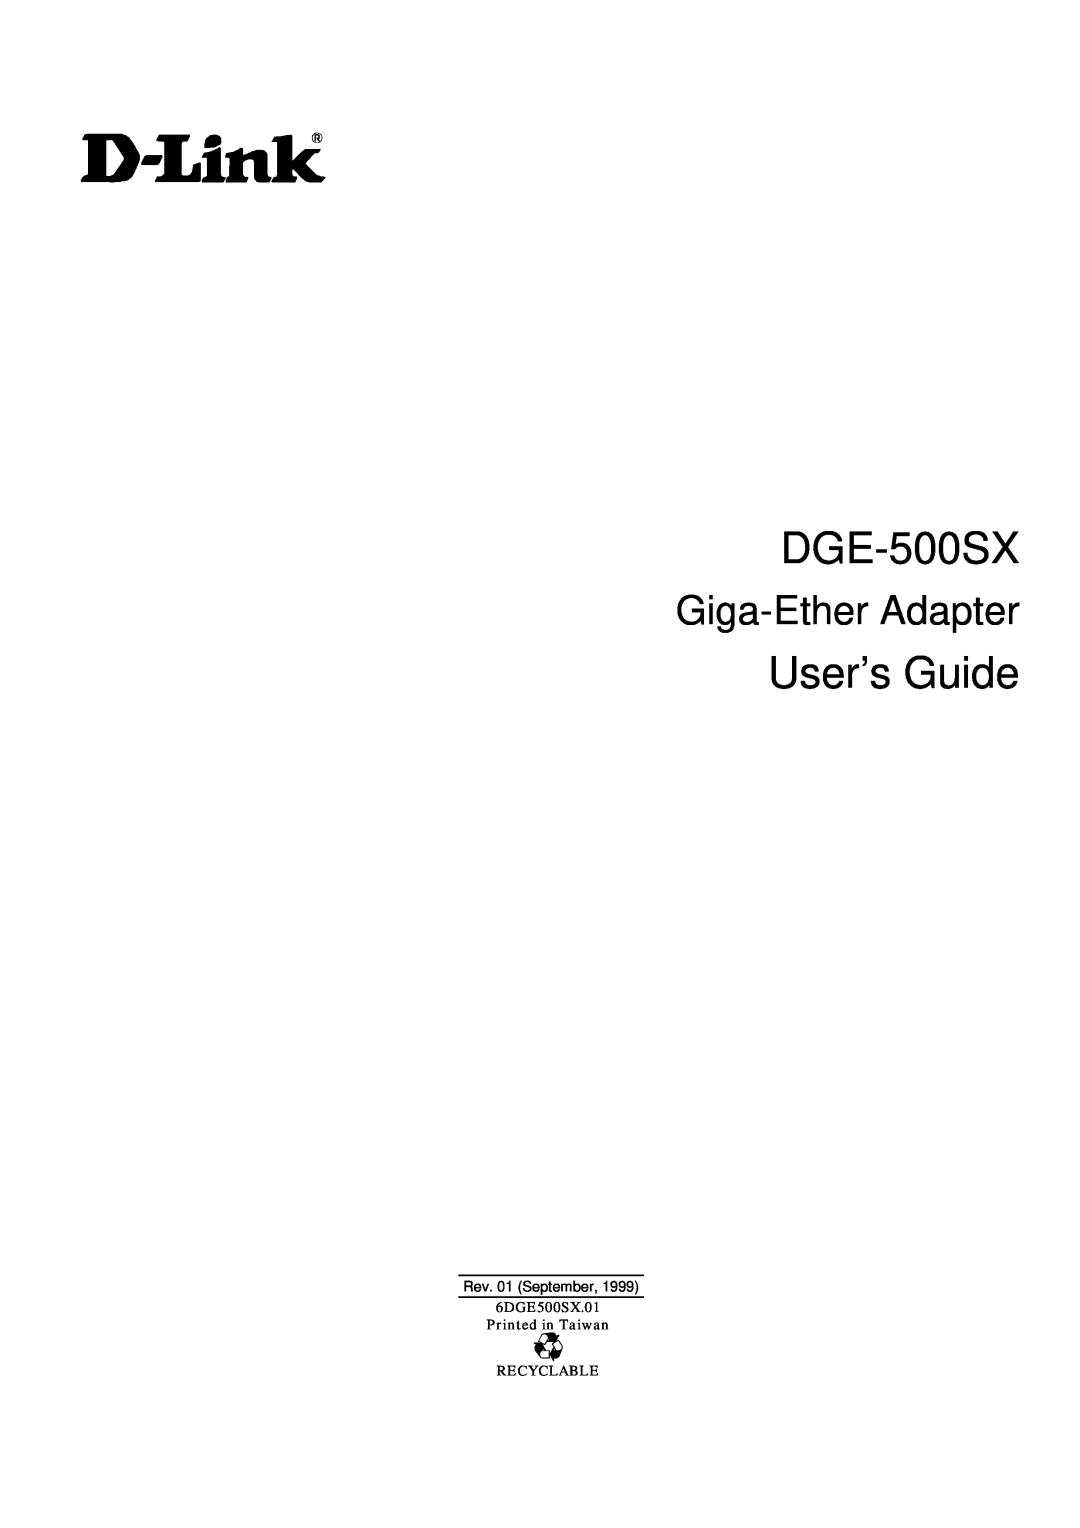 D-Link DGE-500SX manual User’s Guide, Giga-Ether Adapter, Rev. 01 September 